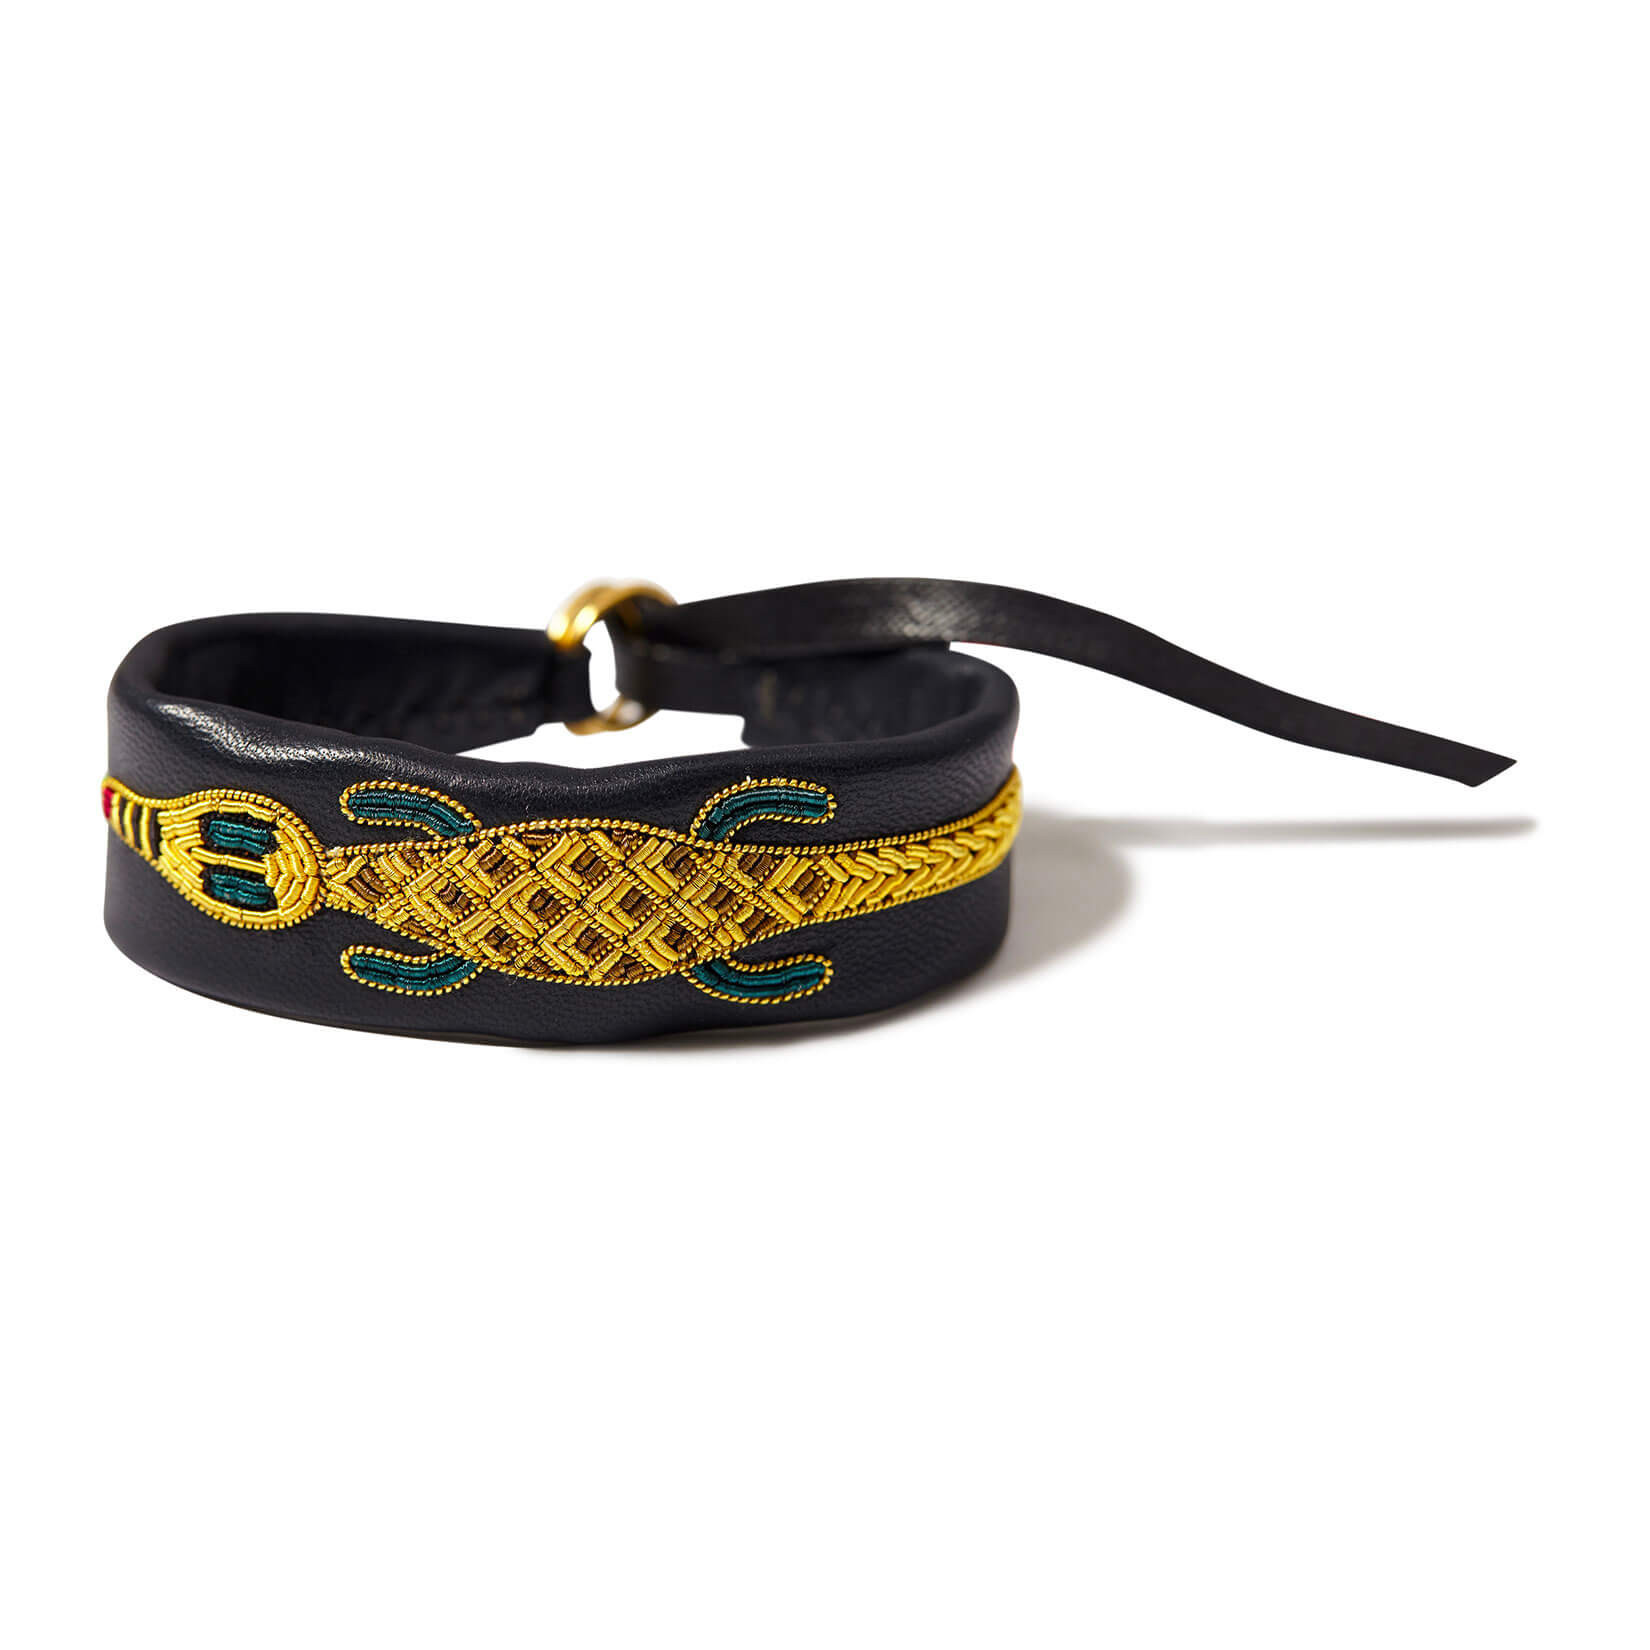 印度丝徽章手工刺绣鳄鱼手链手环，精美的手链将为您的手腕带来优雅的装束。